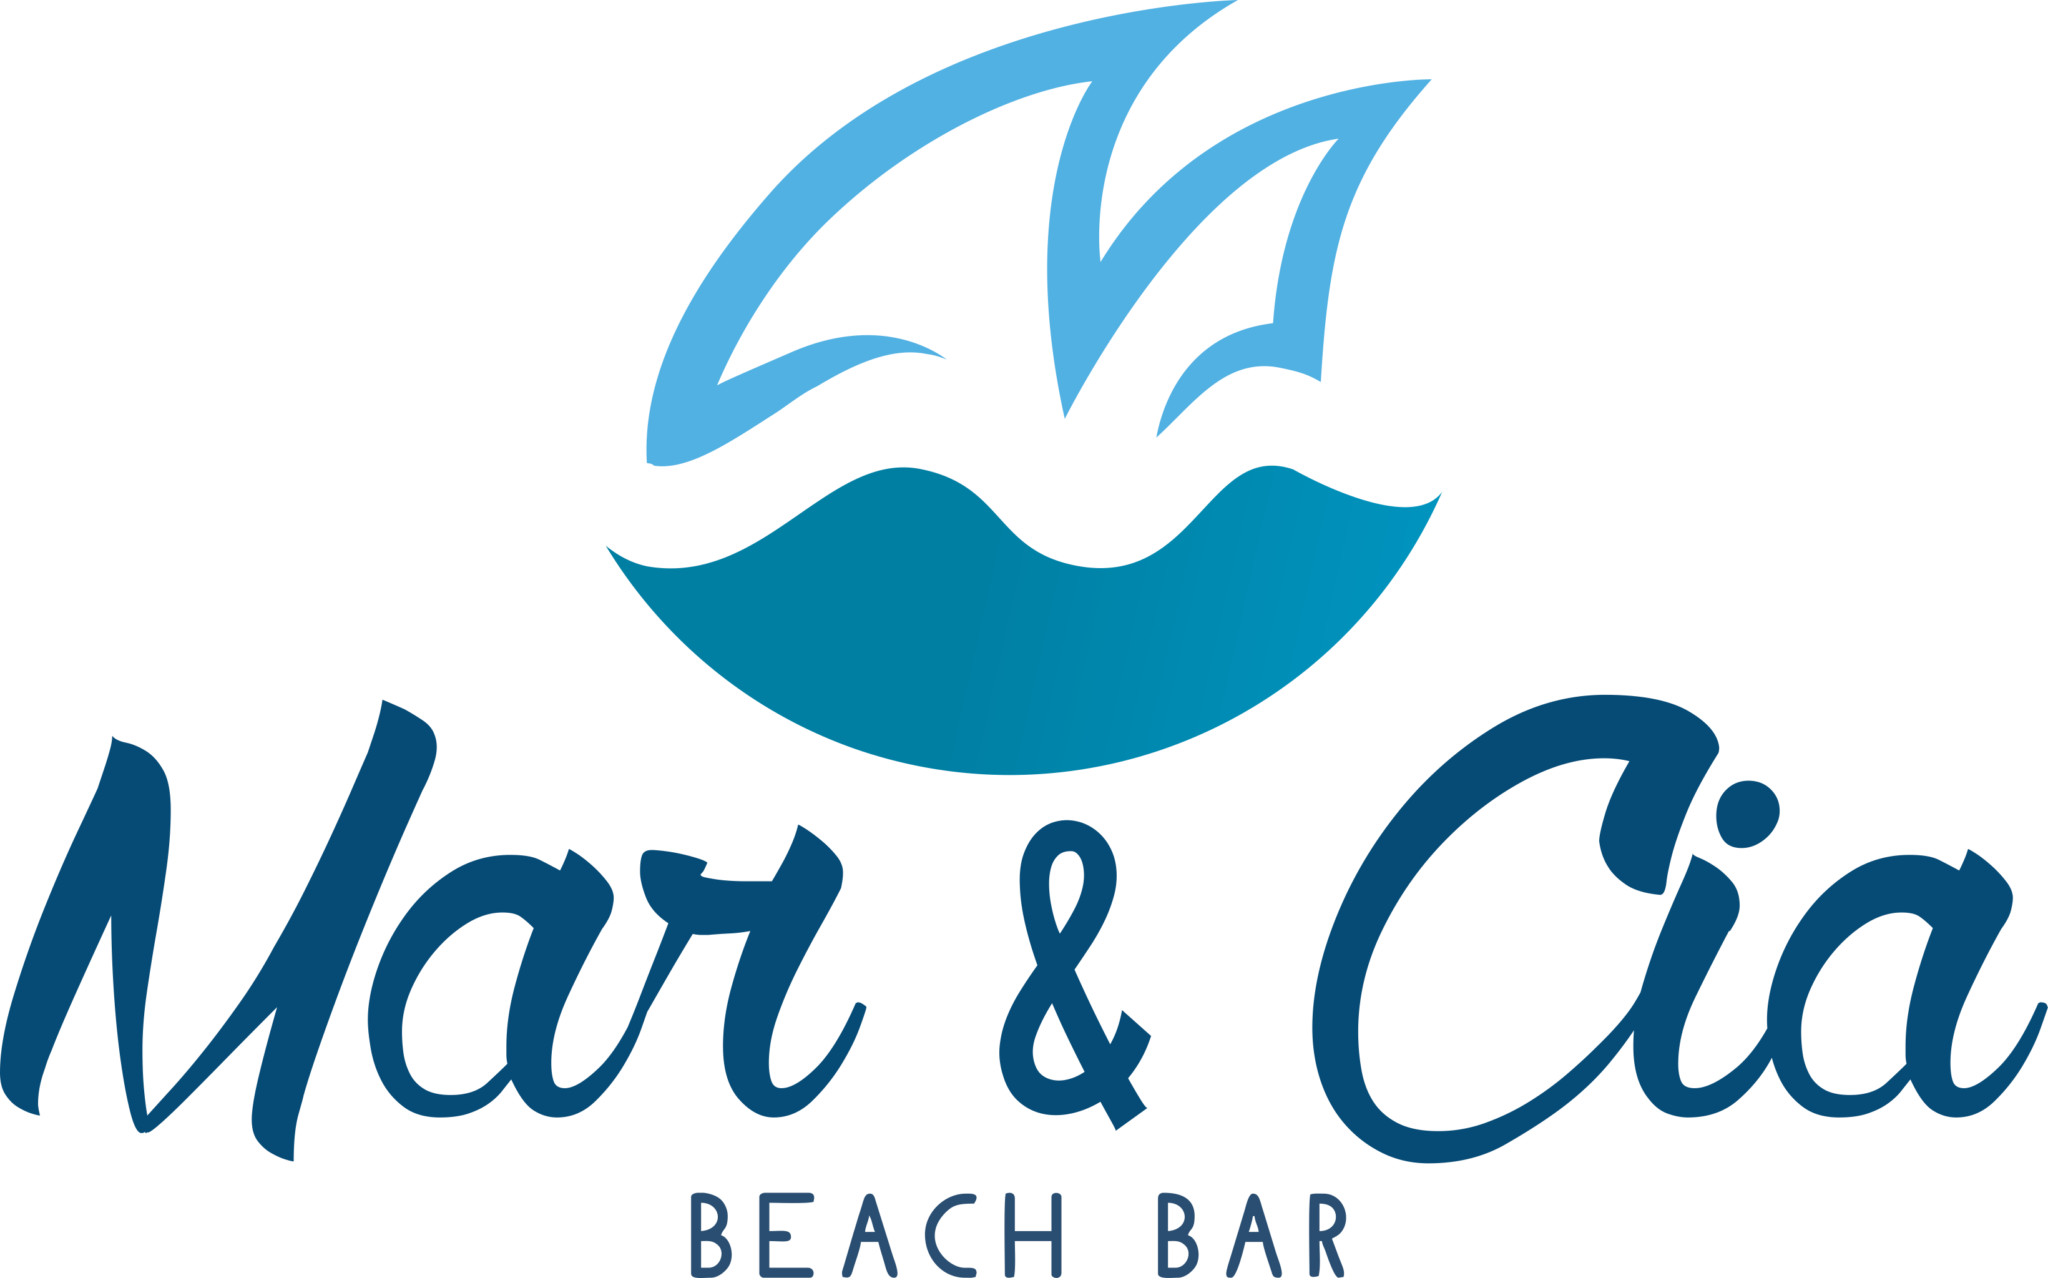 Mar & Cia Beach Bar